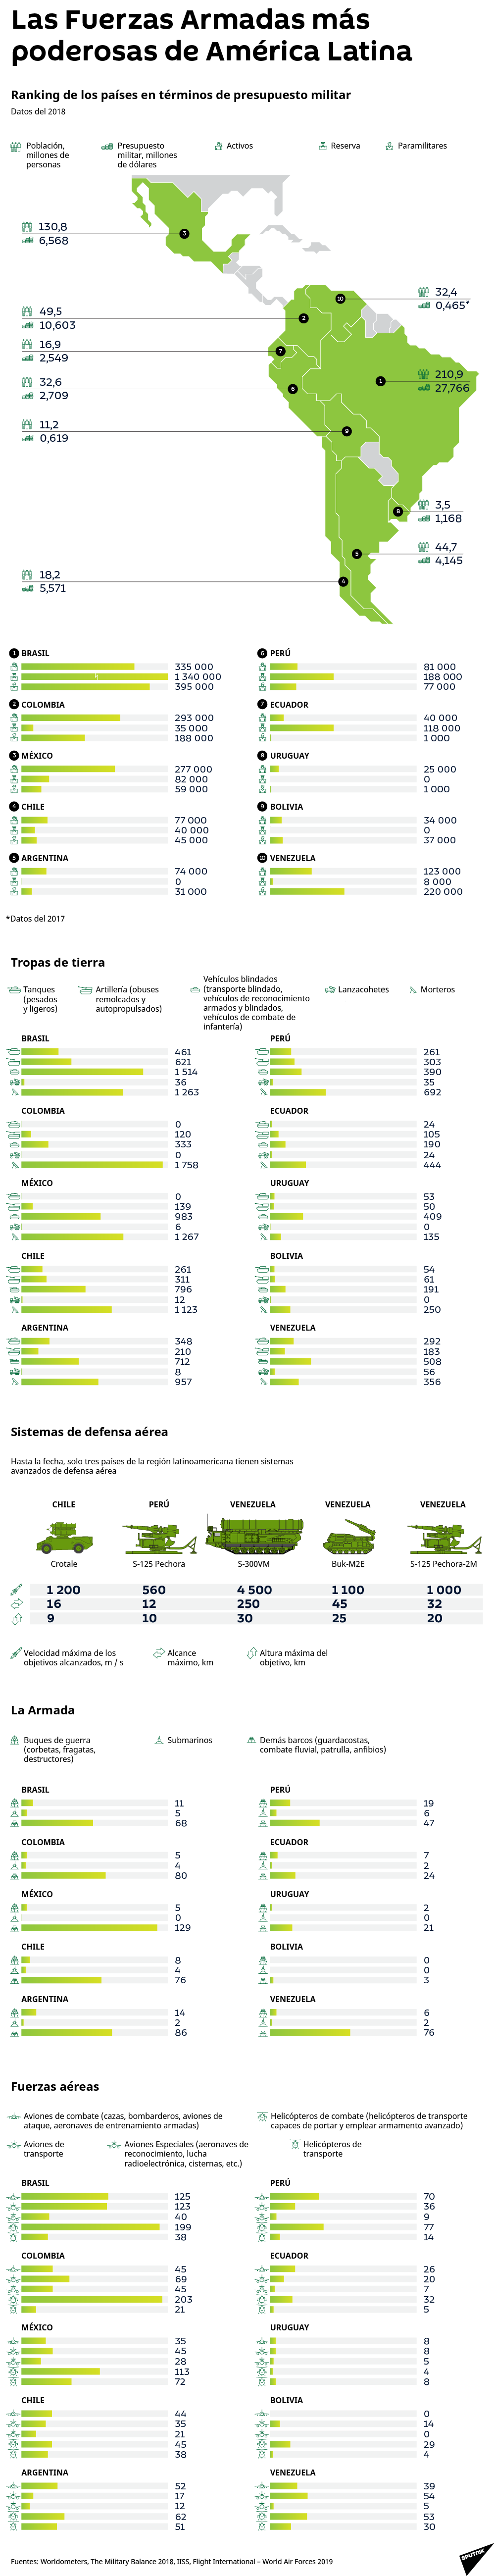 Los países latinoamericanos más potentes en términos militares - Sputnik Mundo